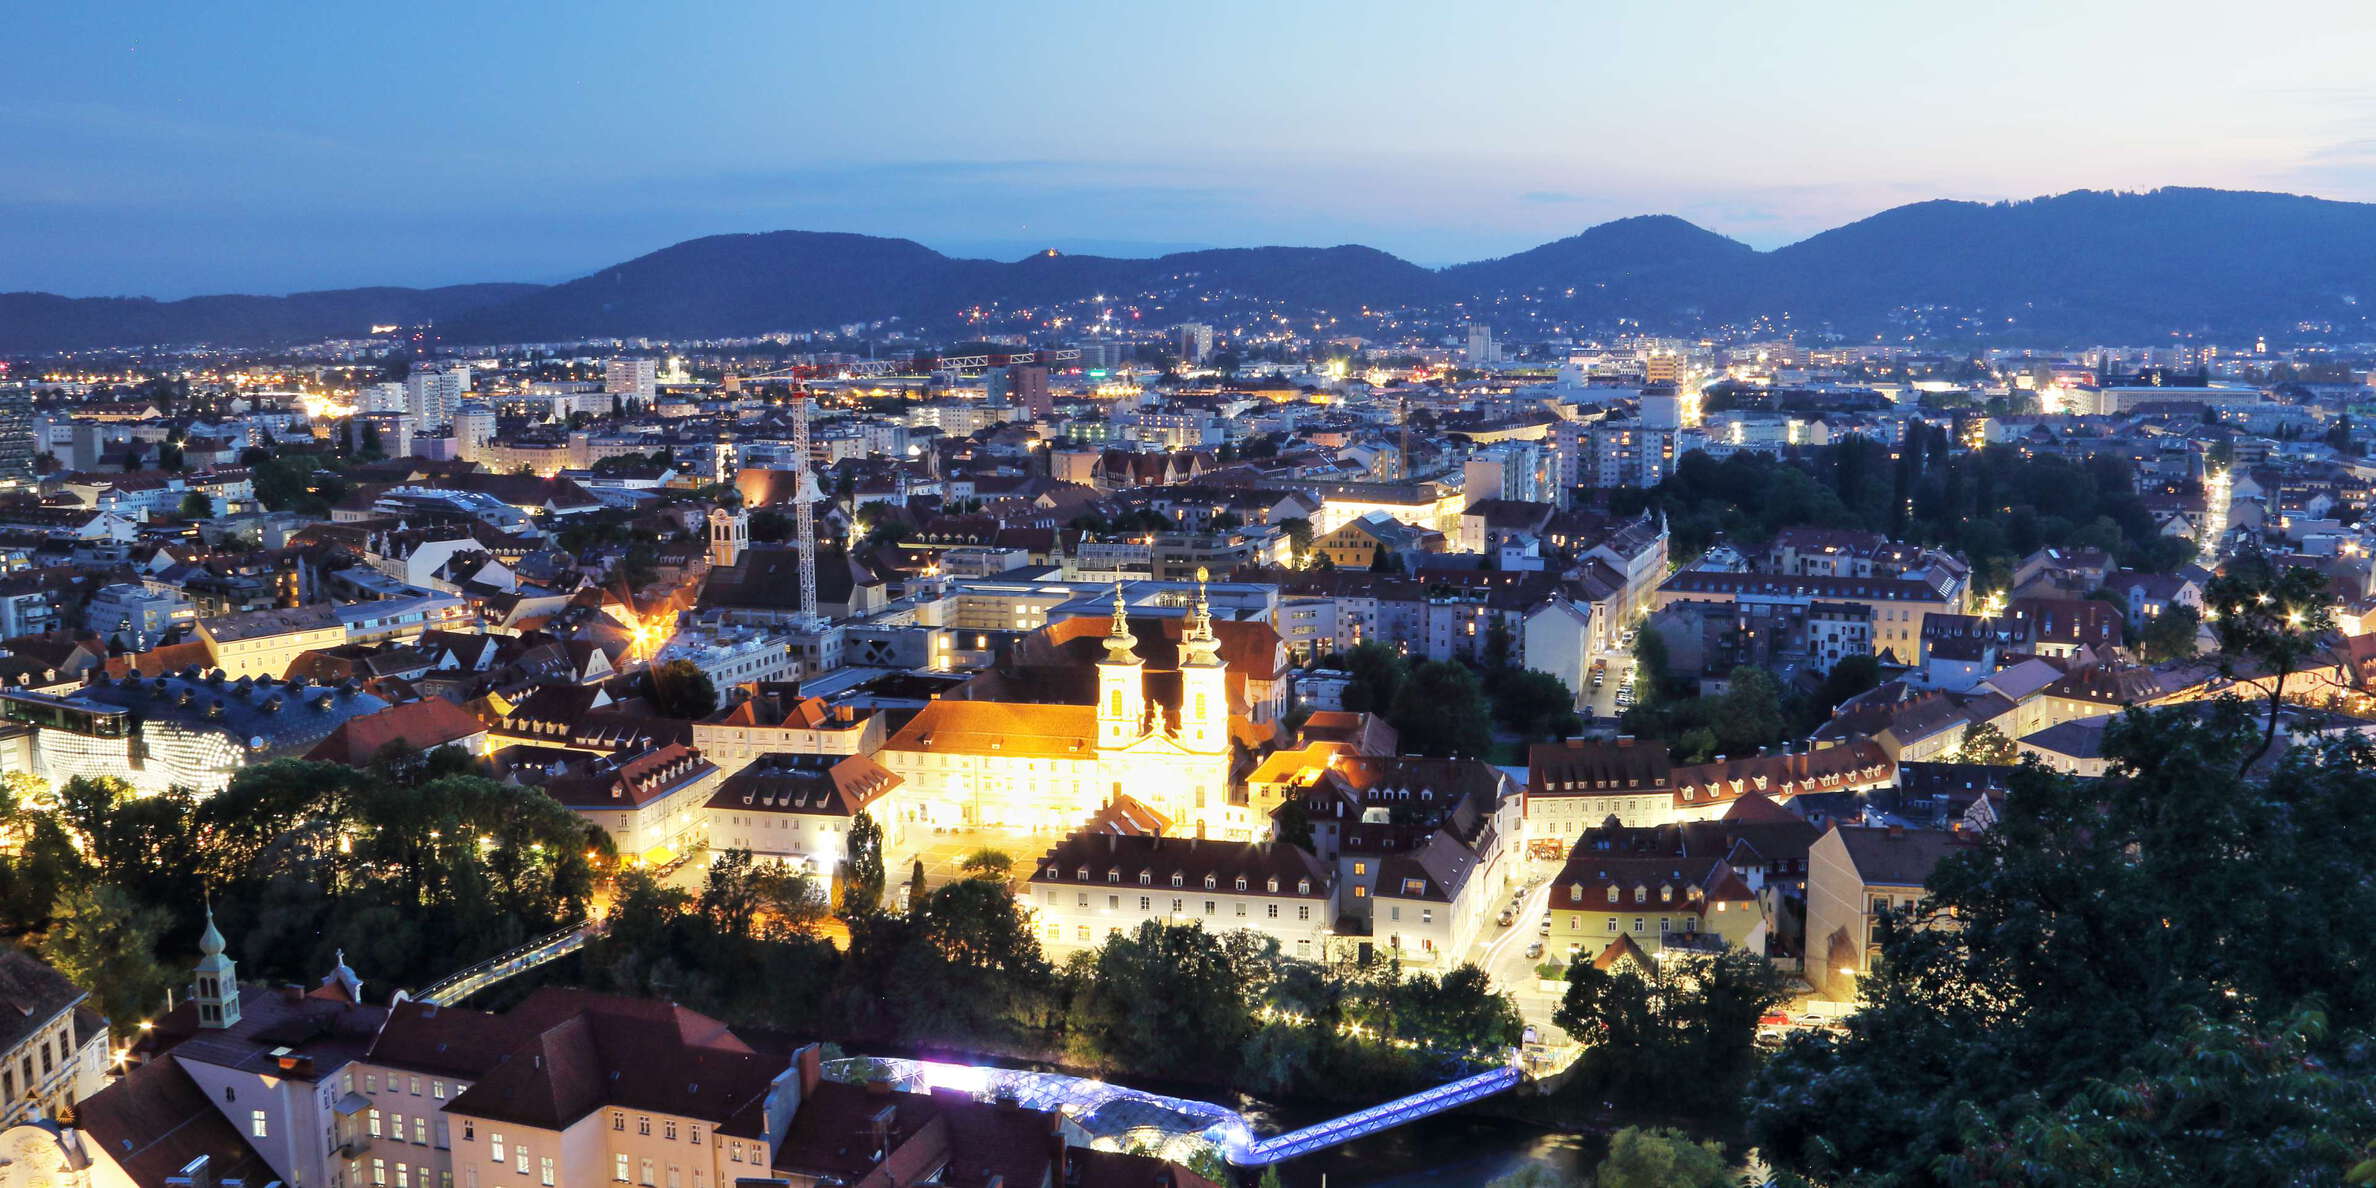 Graz at night